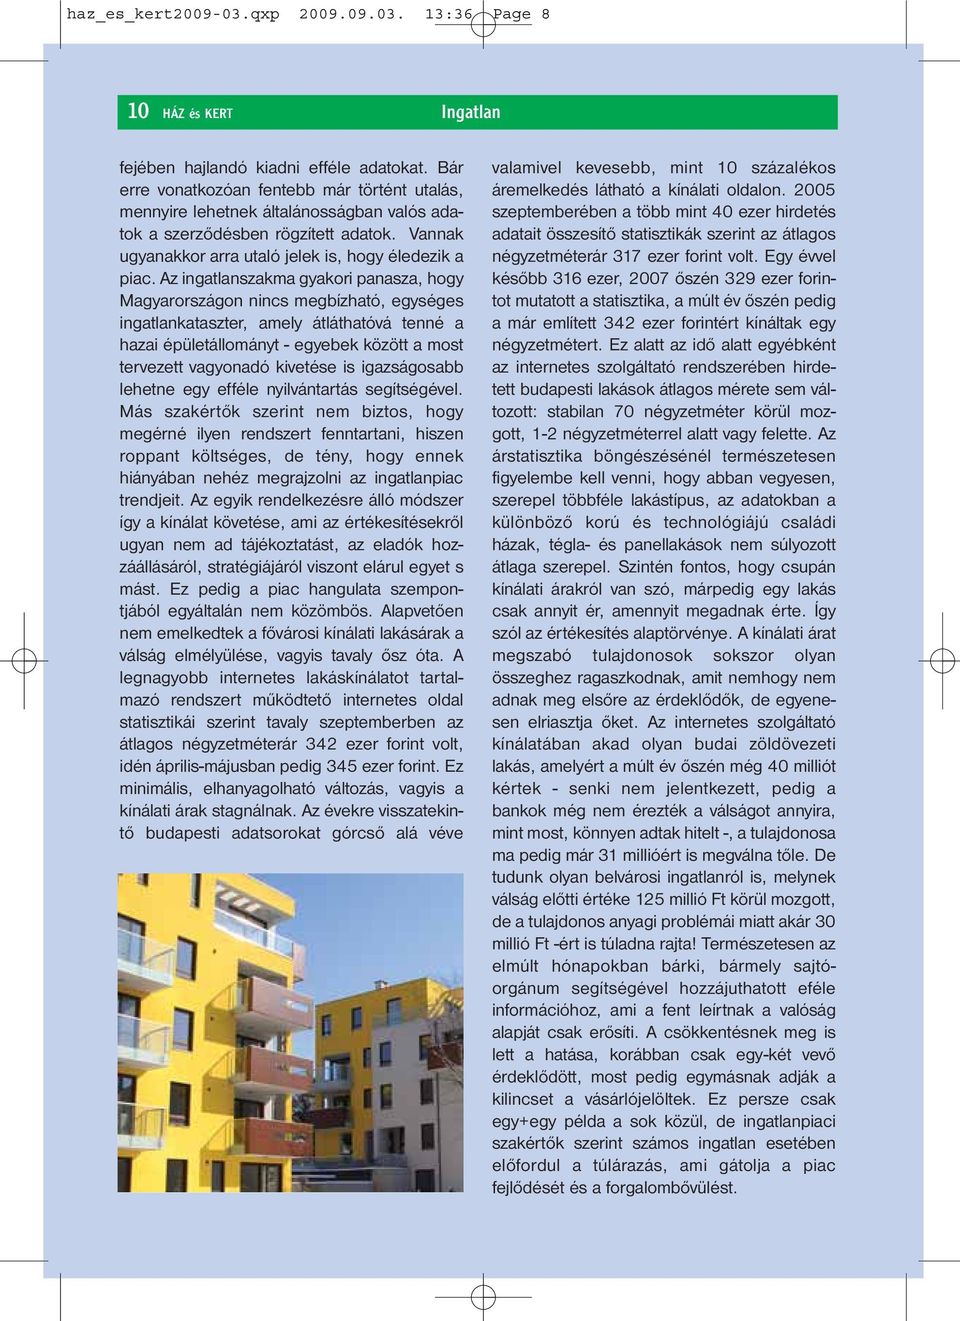 Az ingatlanszakma gyakori panasza, hogy Magyarországon nincs megbízható, egységes ingatlankataszter, amely átláthatóvá tenné a hazai épületállományt - egyebek között a most tervezett vagyonadó